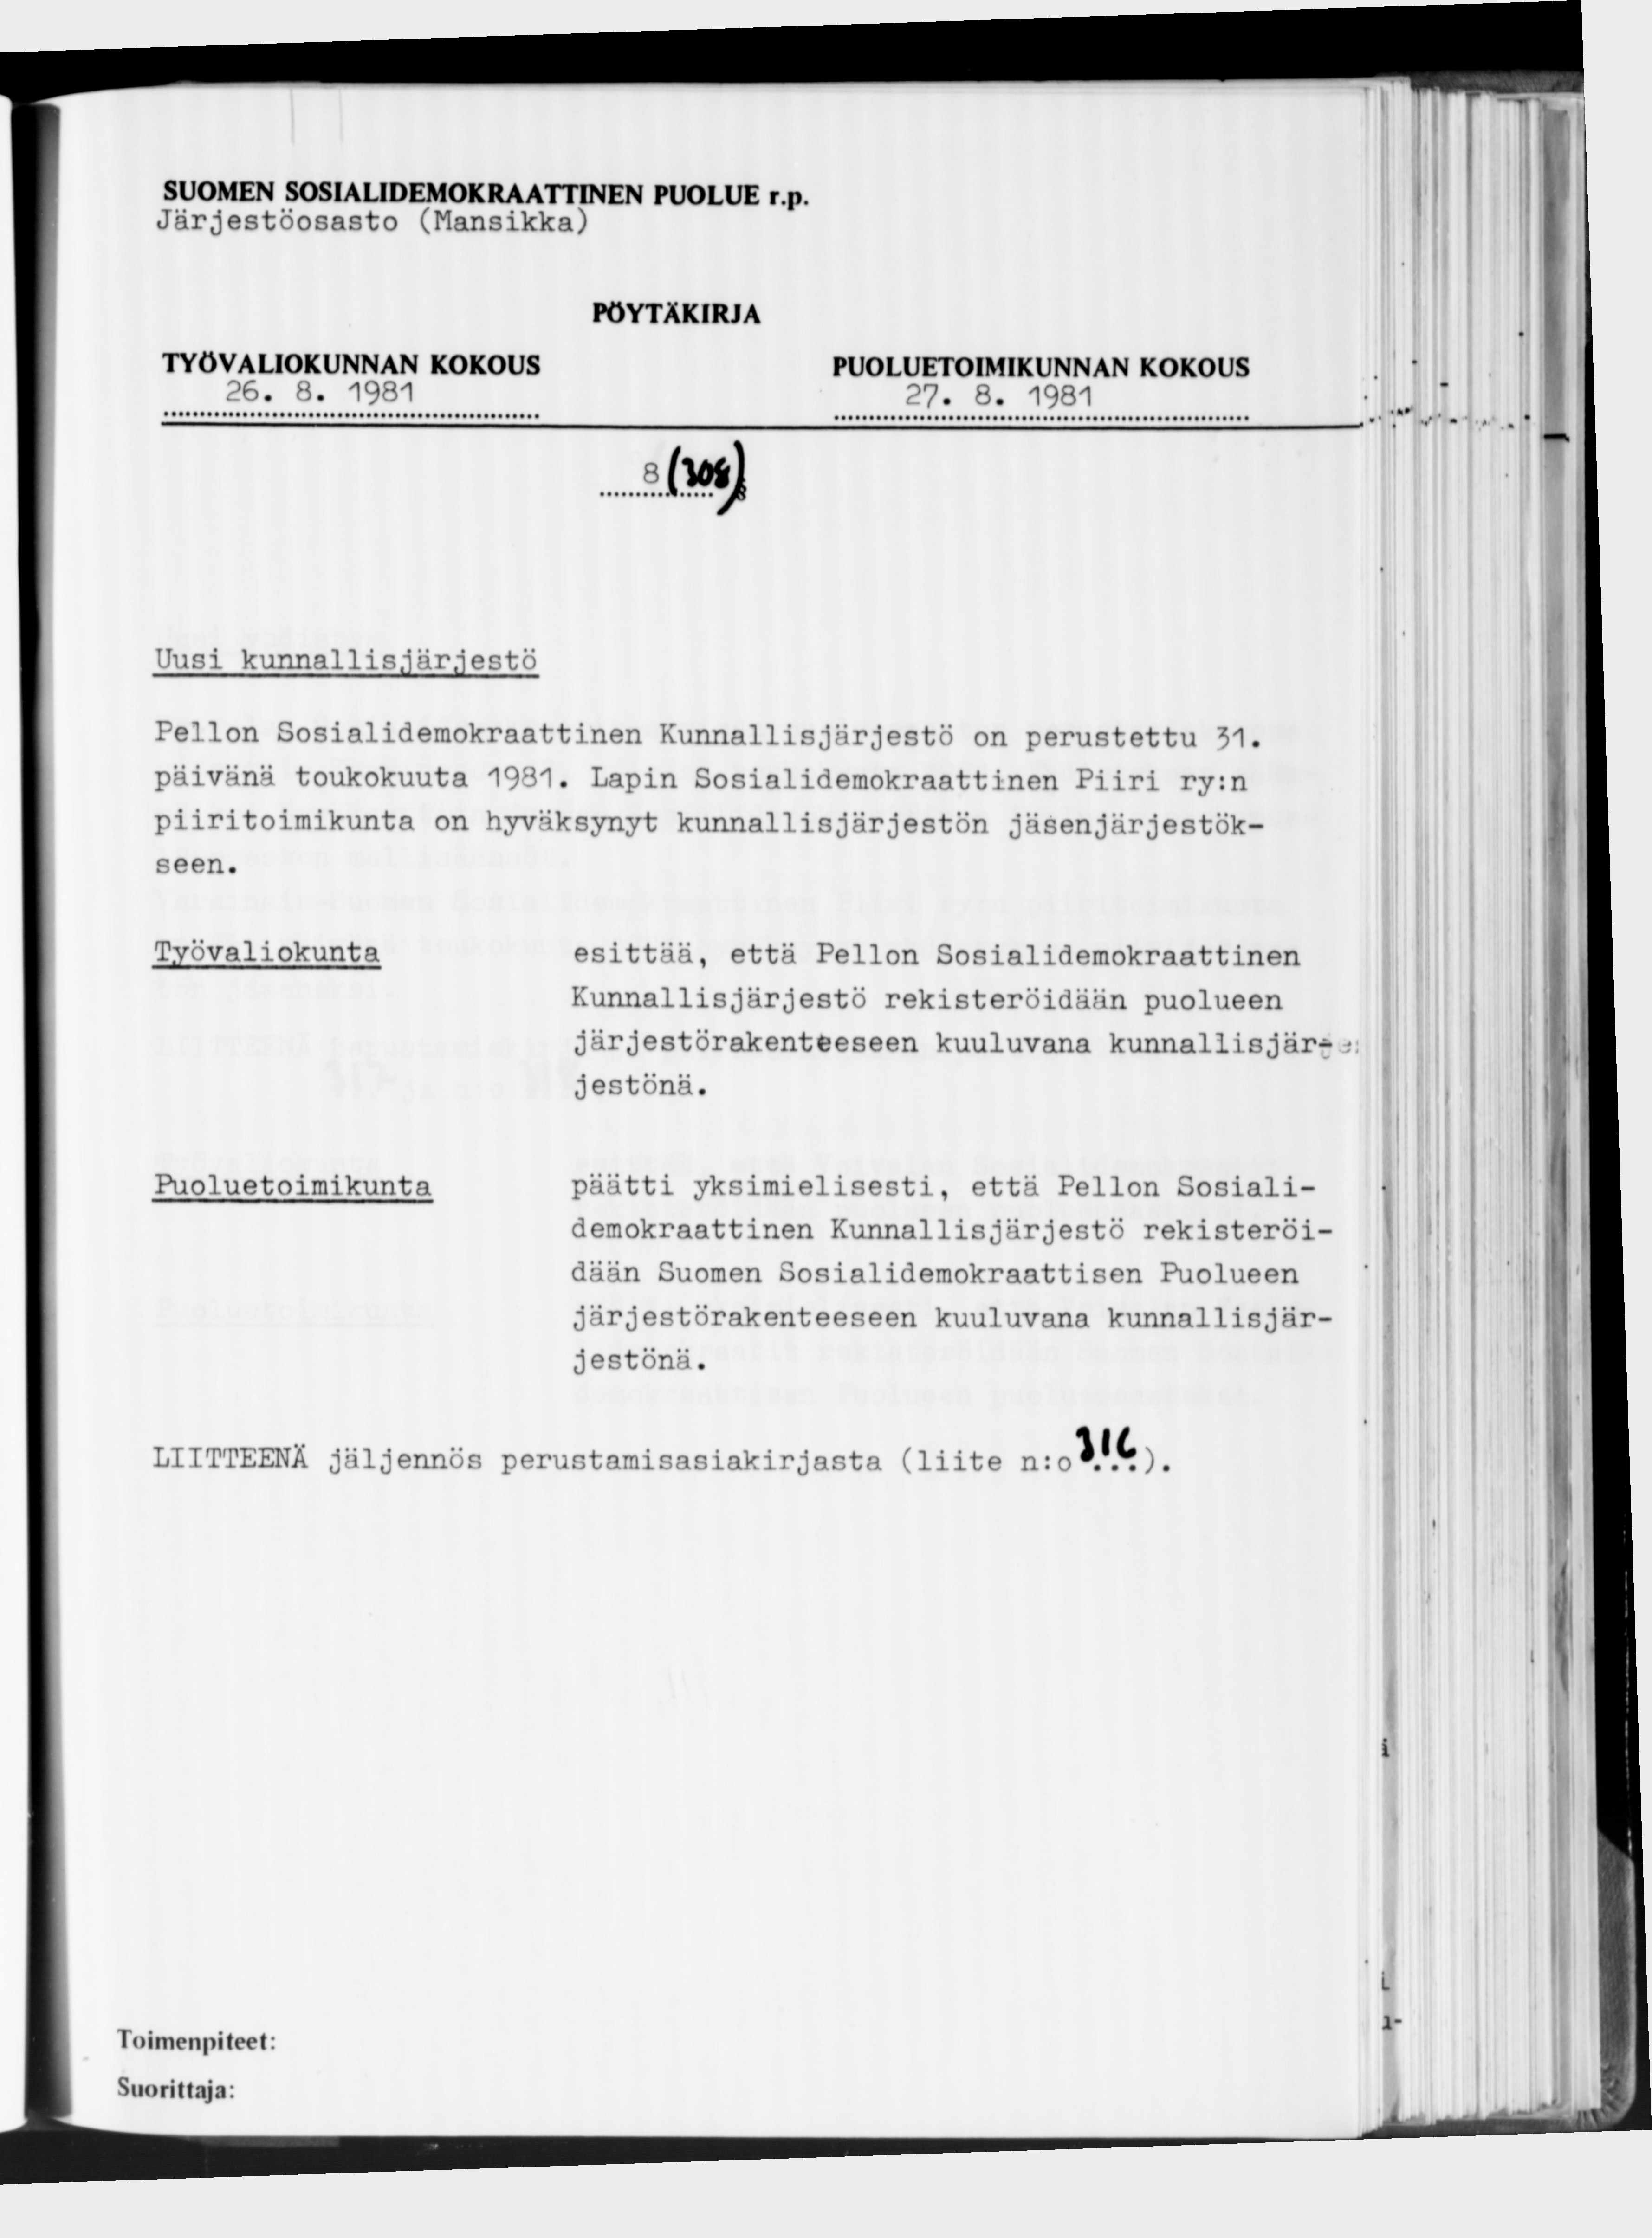 Järjestöosasto (Mansikka) 26. 8. 1981 27. 8. 1981 8 Uusi kunnallis,'järjestö Pellon Sosialidemokraattinen Kunnallisjärjestö on perustettu 31. päivänä toukokuuta 1981.